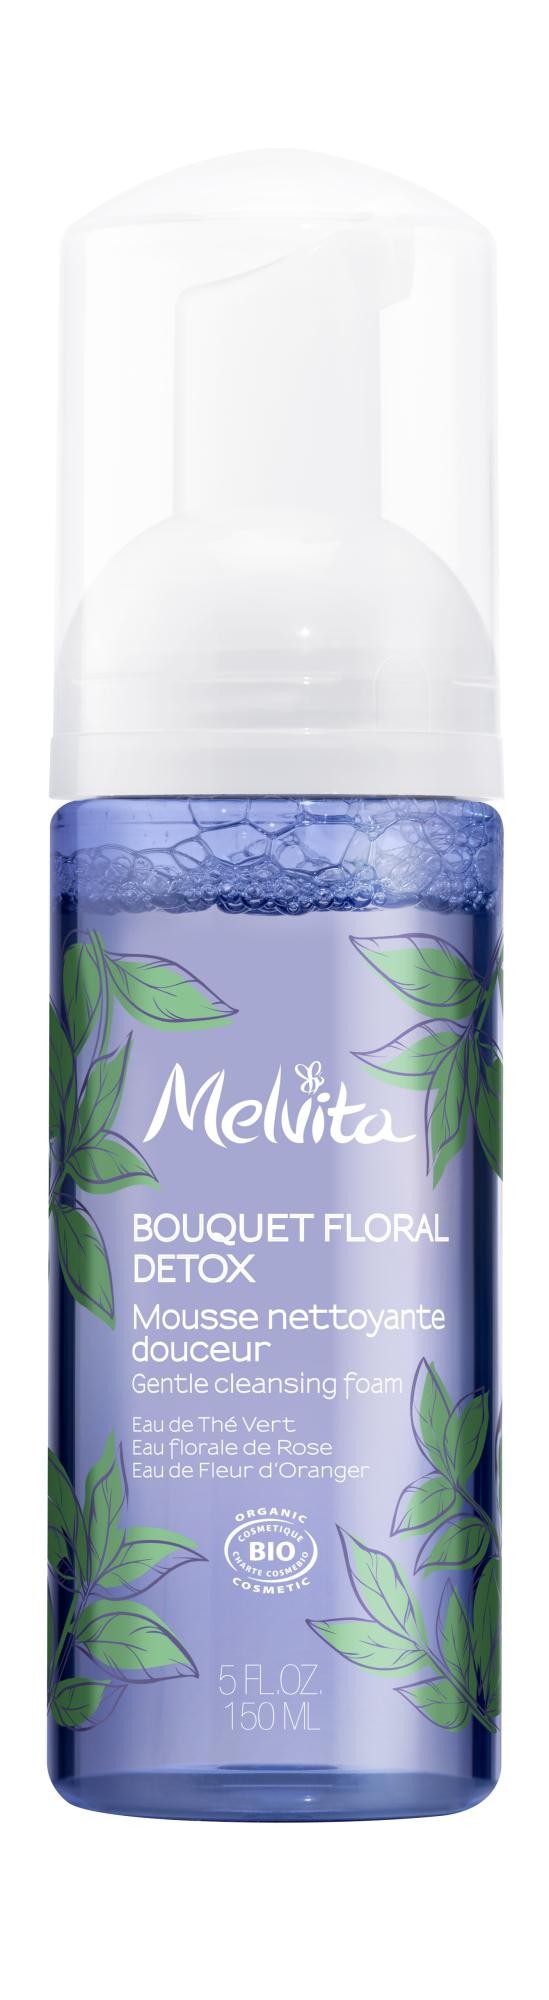 Melvita Mousse Detergente Delicata Detox 150ml